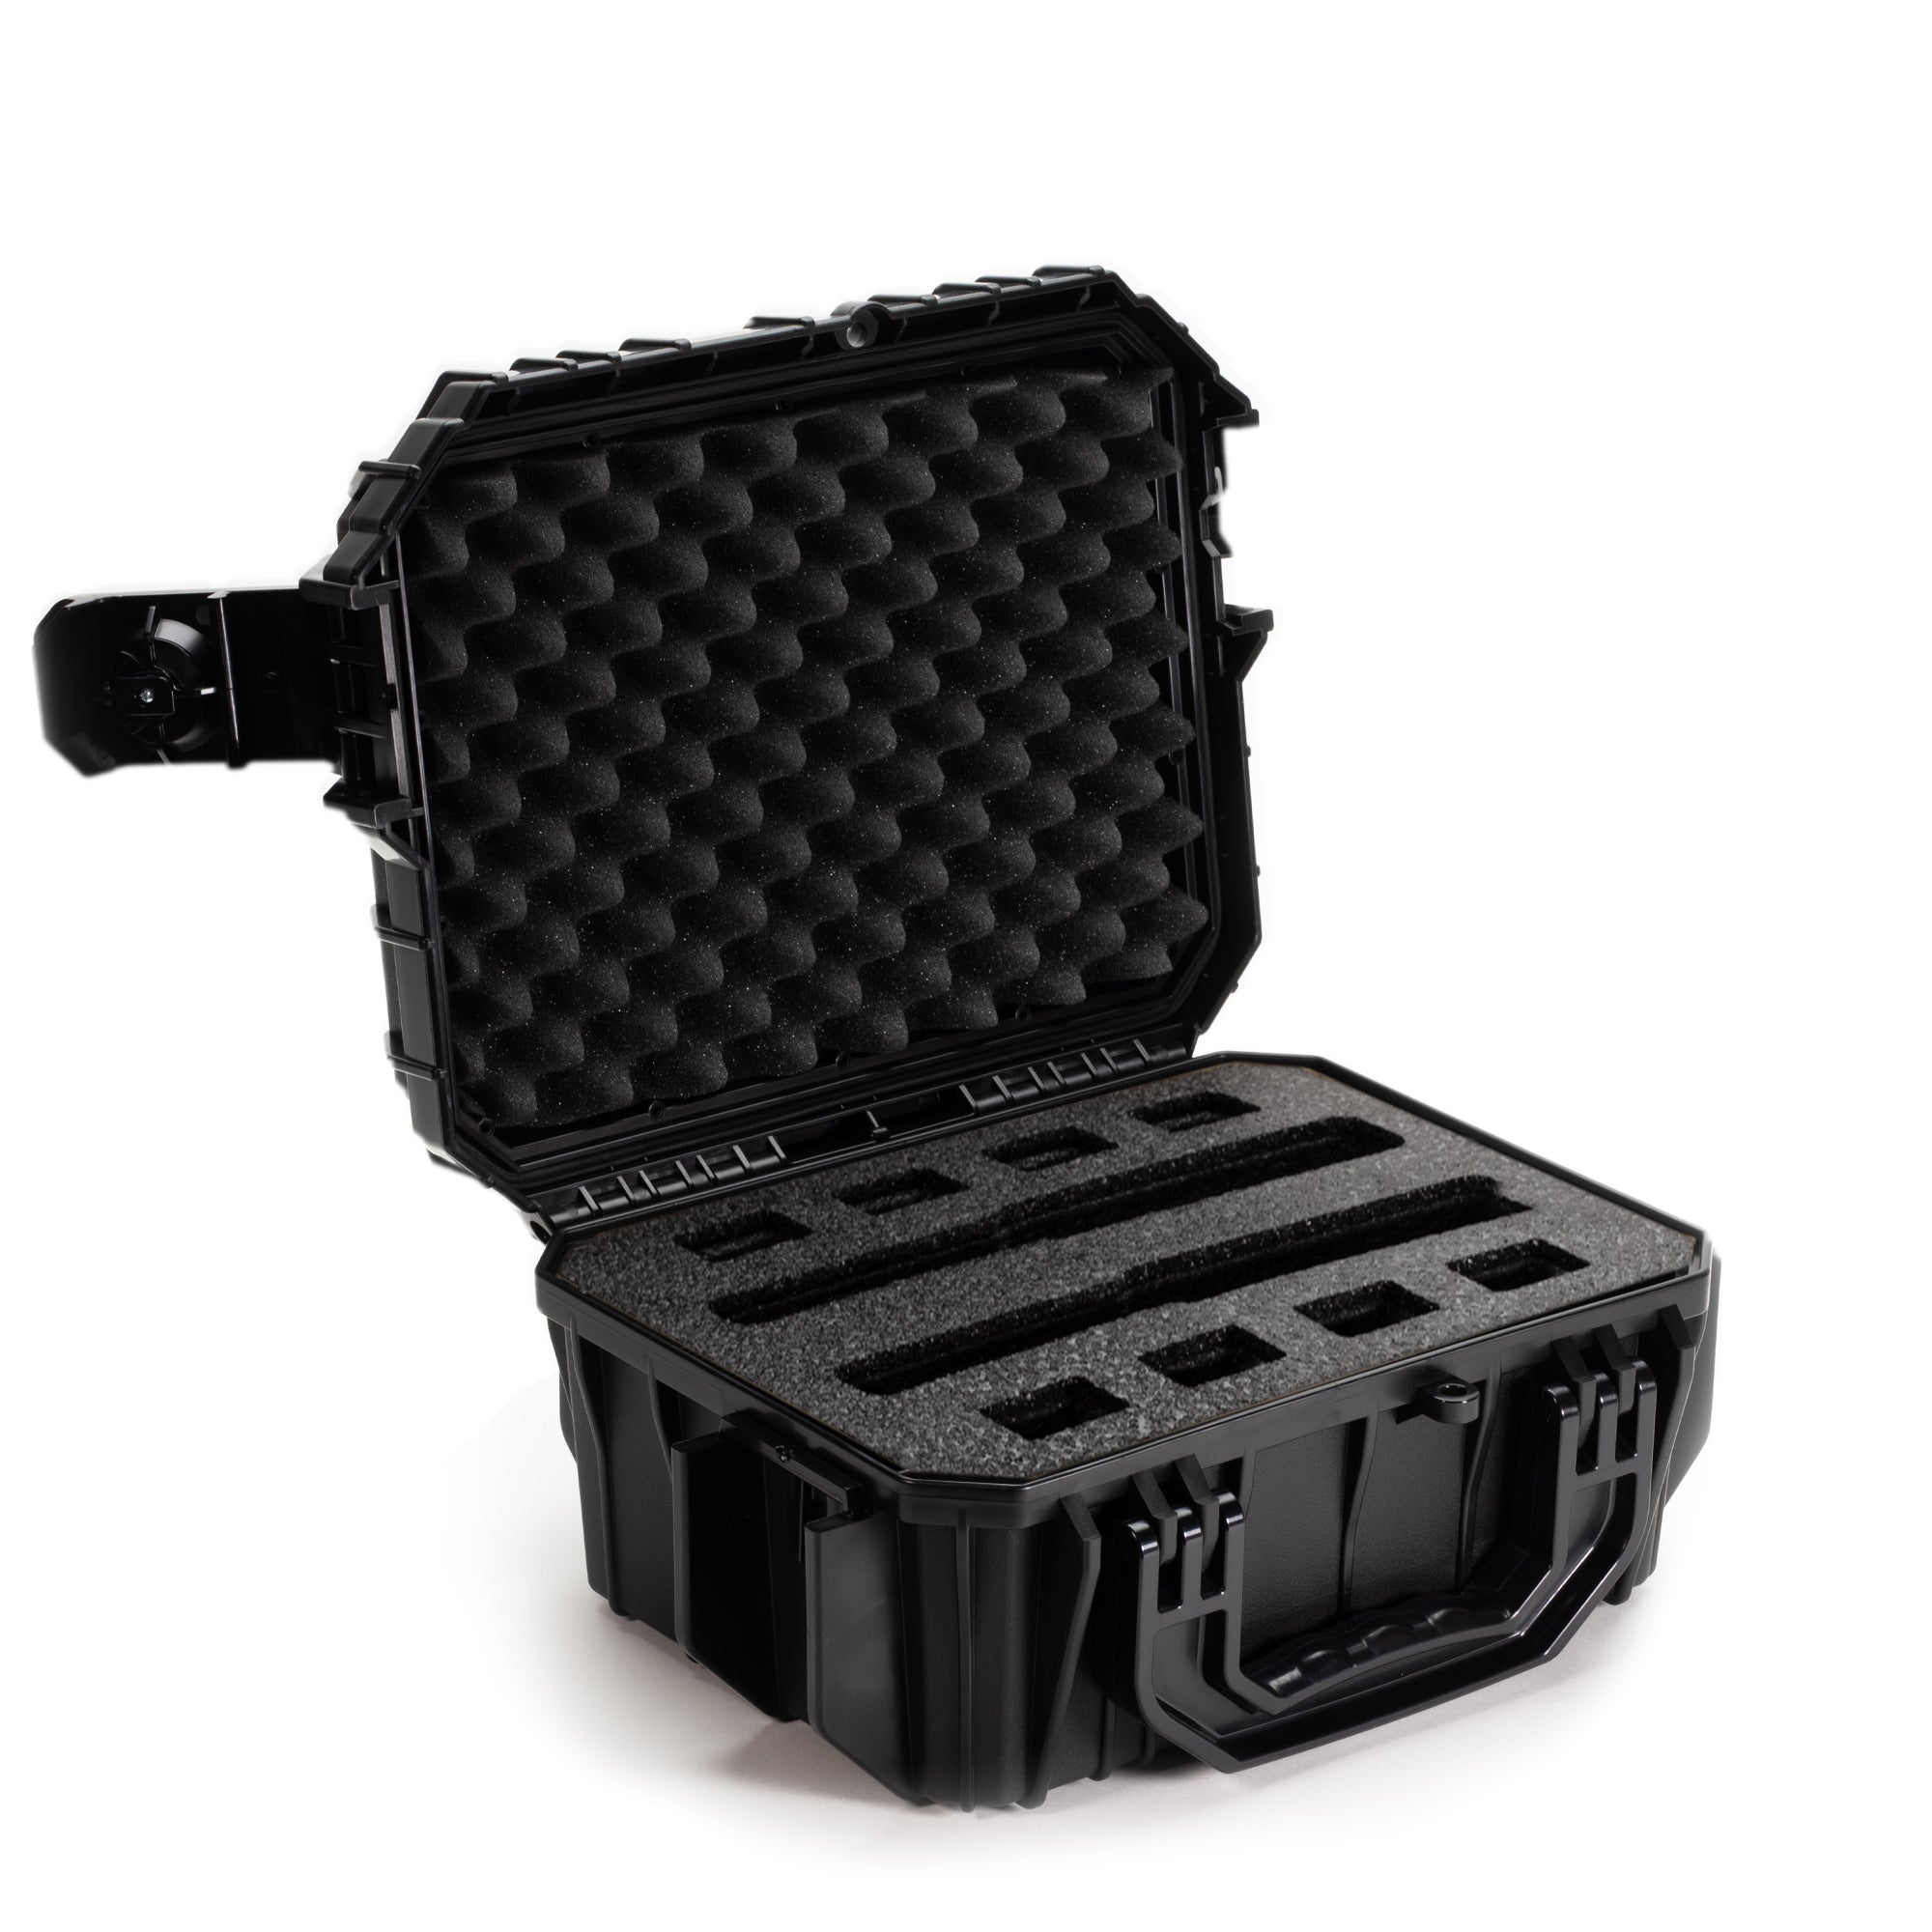 Shell-Case Foam Insert Kit for Hybrid 330 Case (Black)